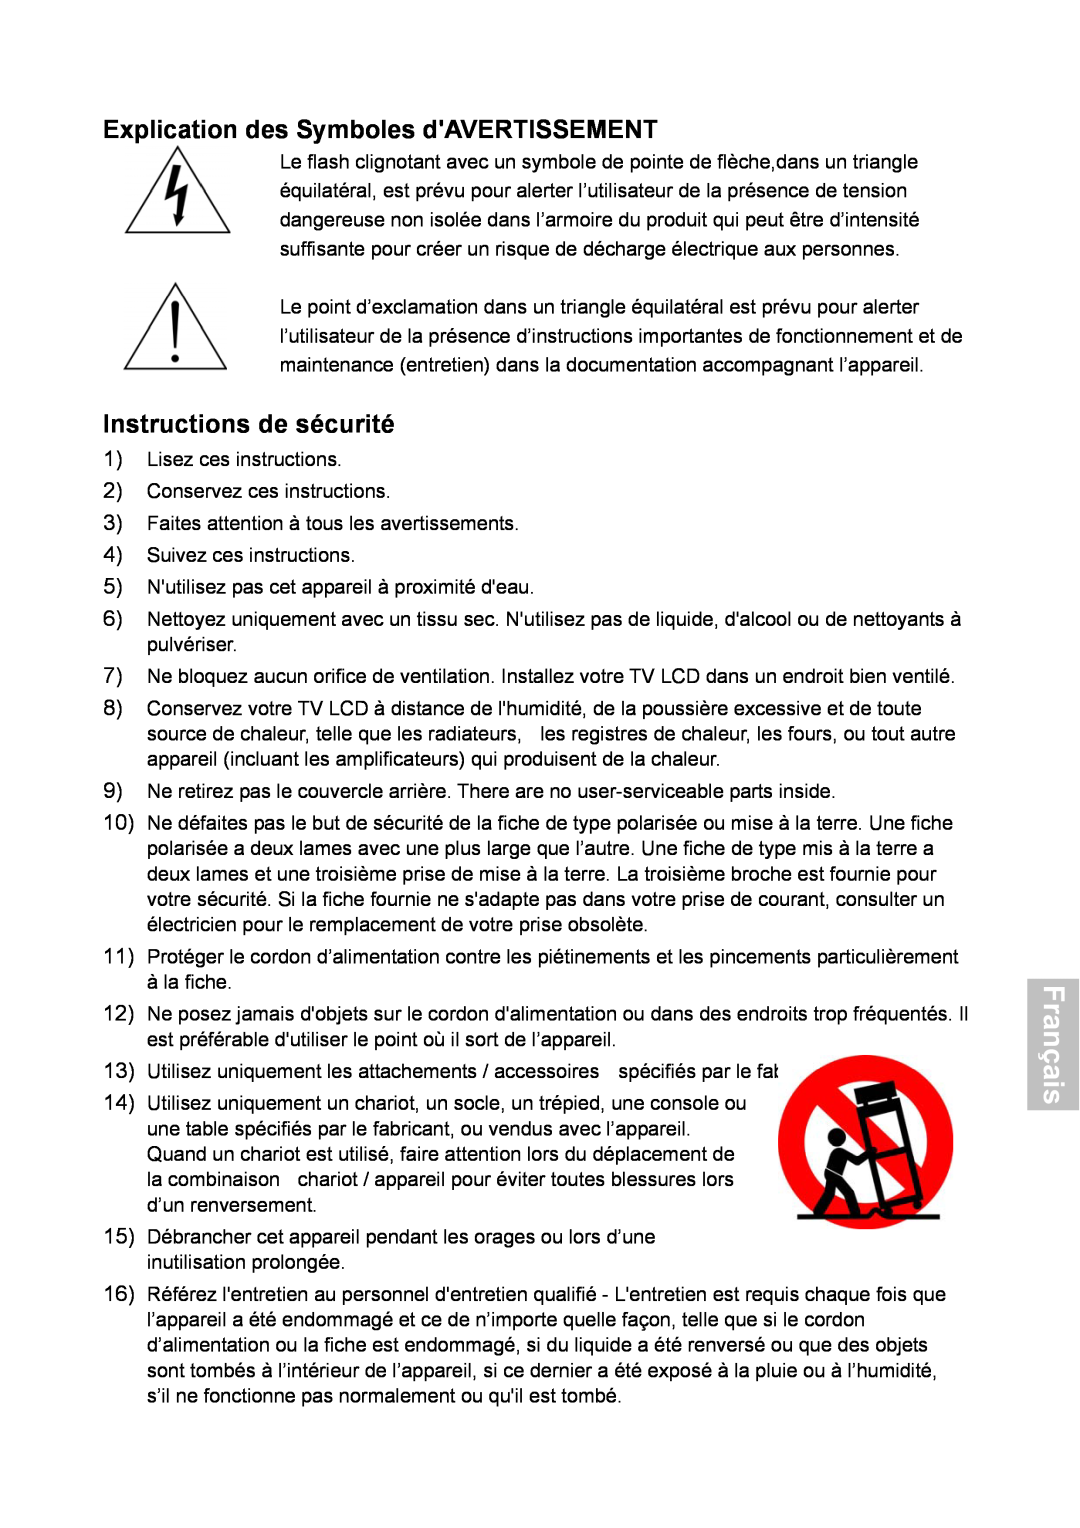 HANNspree XV Series 32 manual Français, Explication des Symboles dAVERTISSEMENT, Instructions de sécurité 